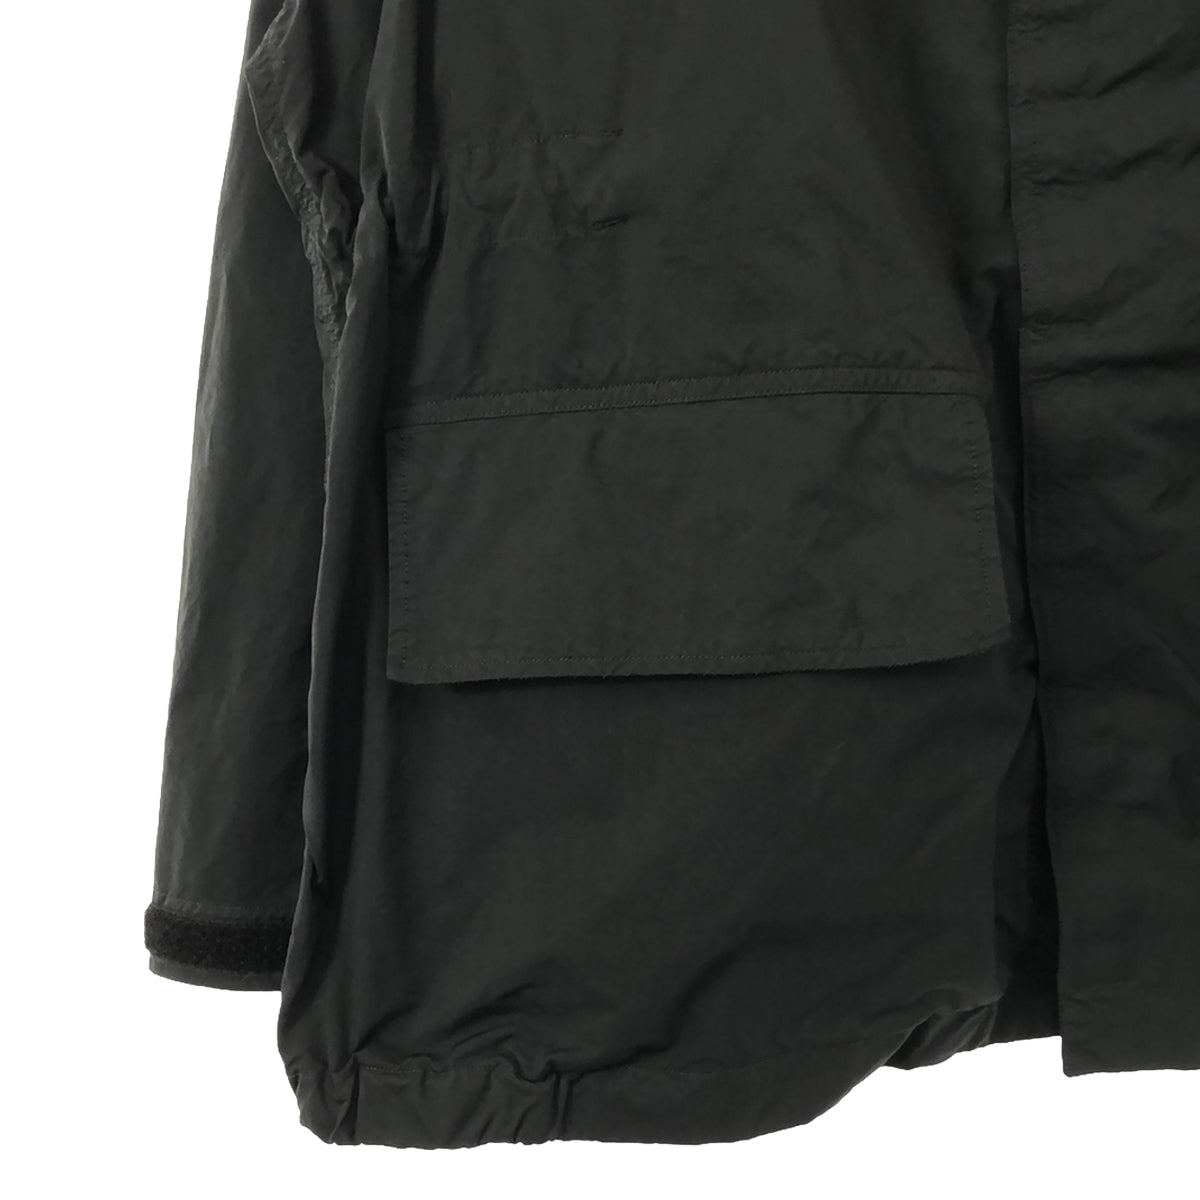 Graphpaper / グラフペーパー | Garment Dyed Foul Weather Jacket ガーメントダイ ファウルウェザー ジャケット マウンテンパーカー | 2 | ブラック | メンズ